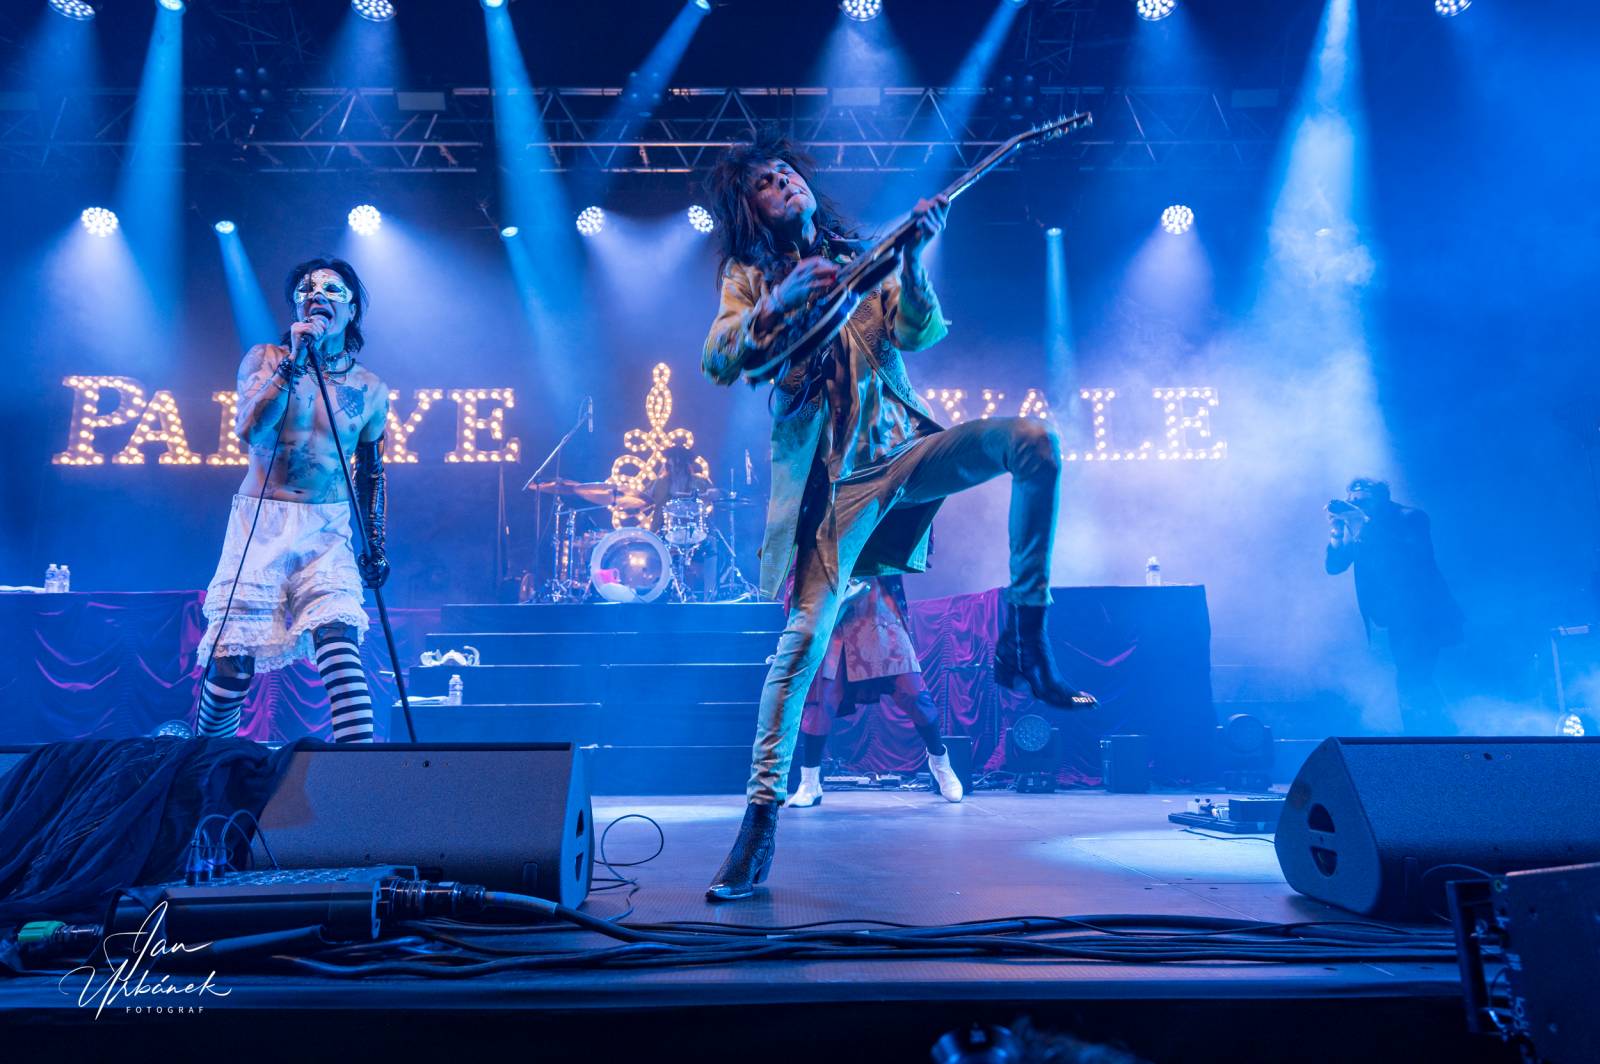 Palaye Royale v Praze odstartovali turné, fanynky šílely nadšením